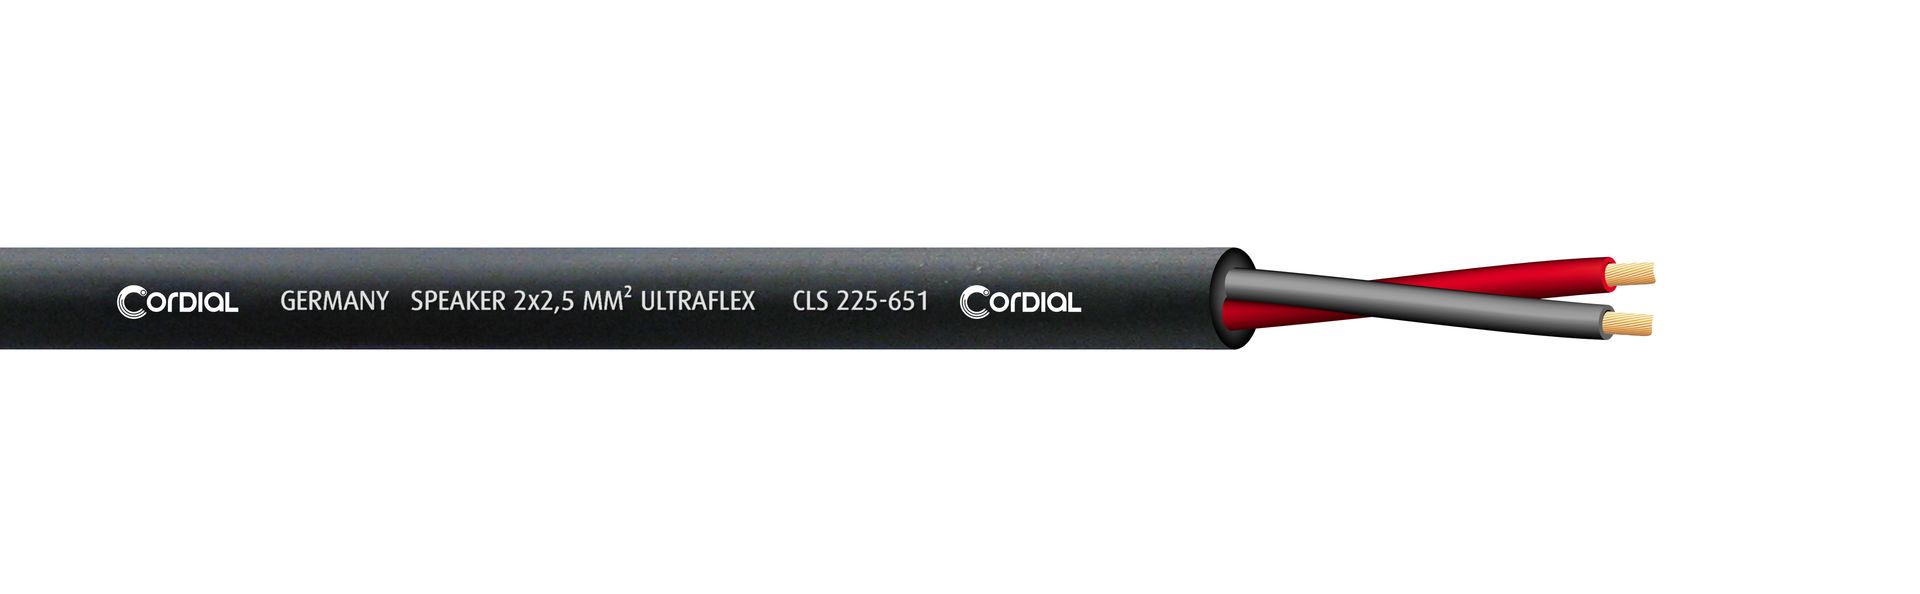 Cordial CLS 225-651 BK Lautsprecherkabel black 2 x 2,50 qmm, Meterware Ultraflex